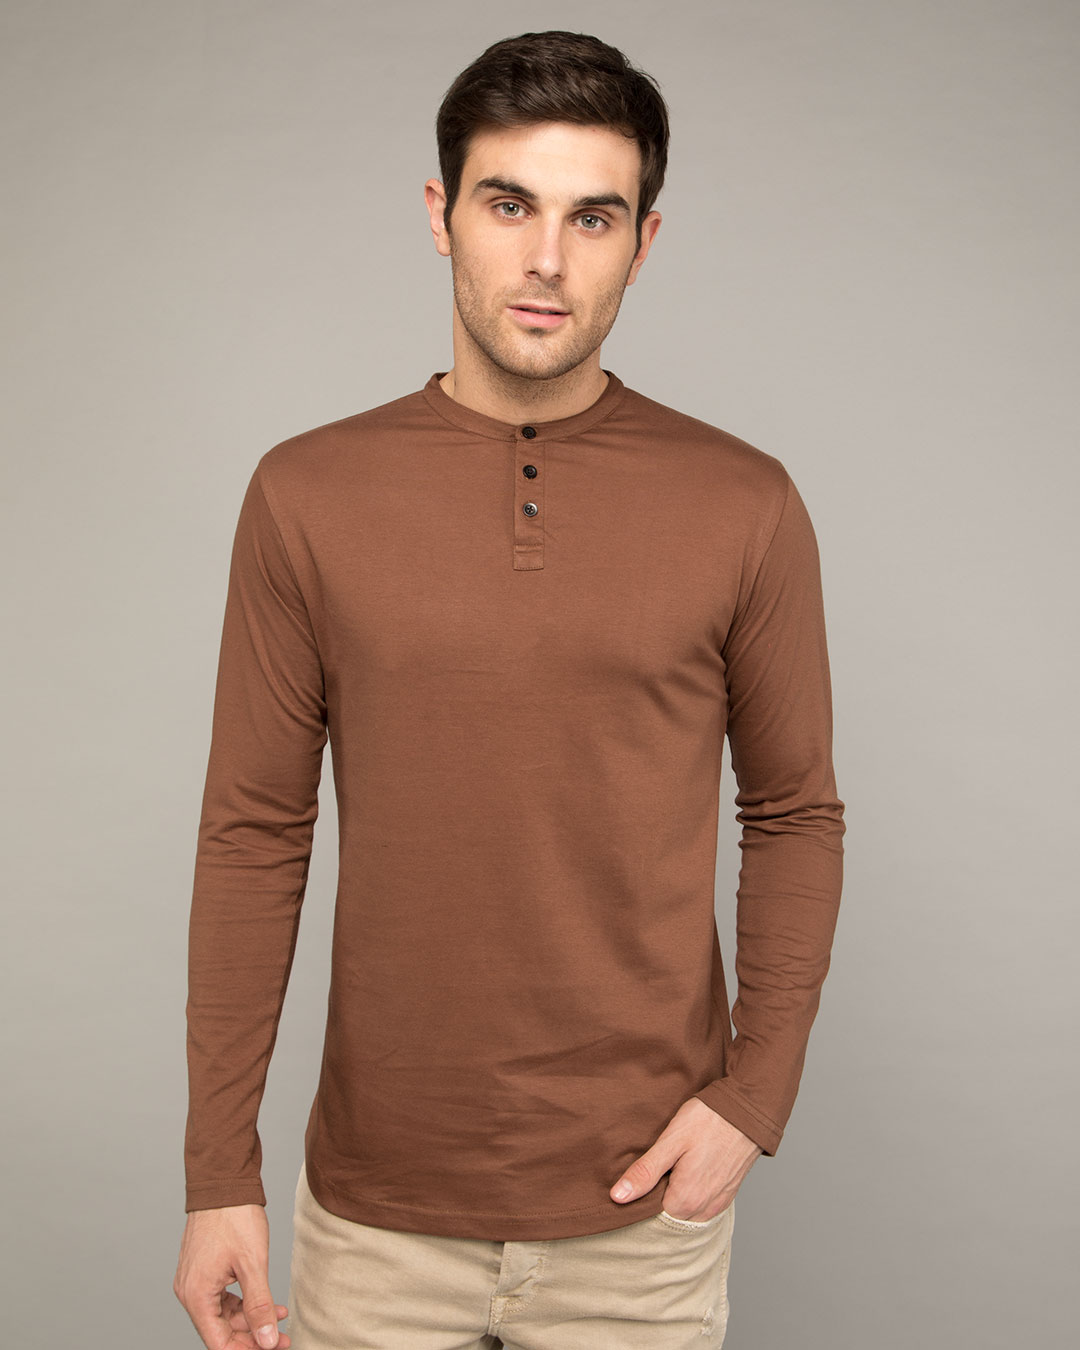 Buy Brown Plain T-Shirt For Men Online India @ Bewakoof.com